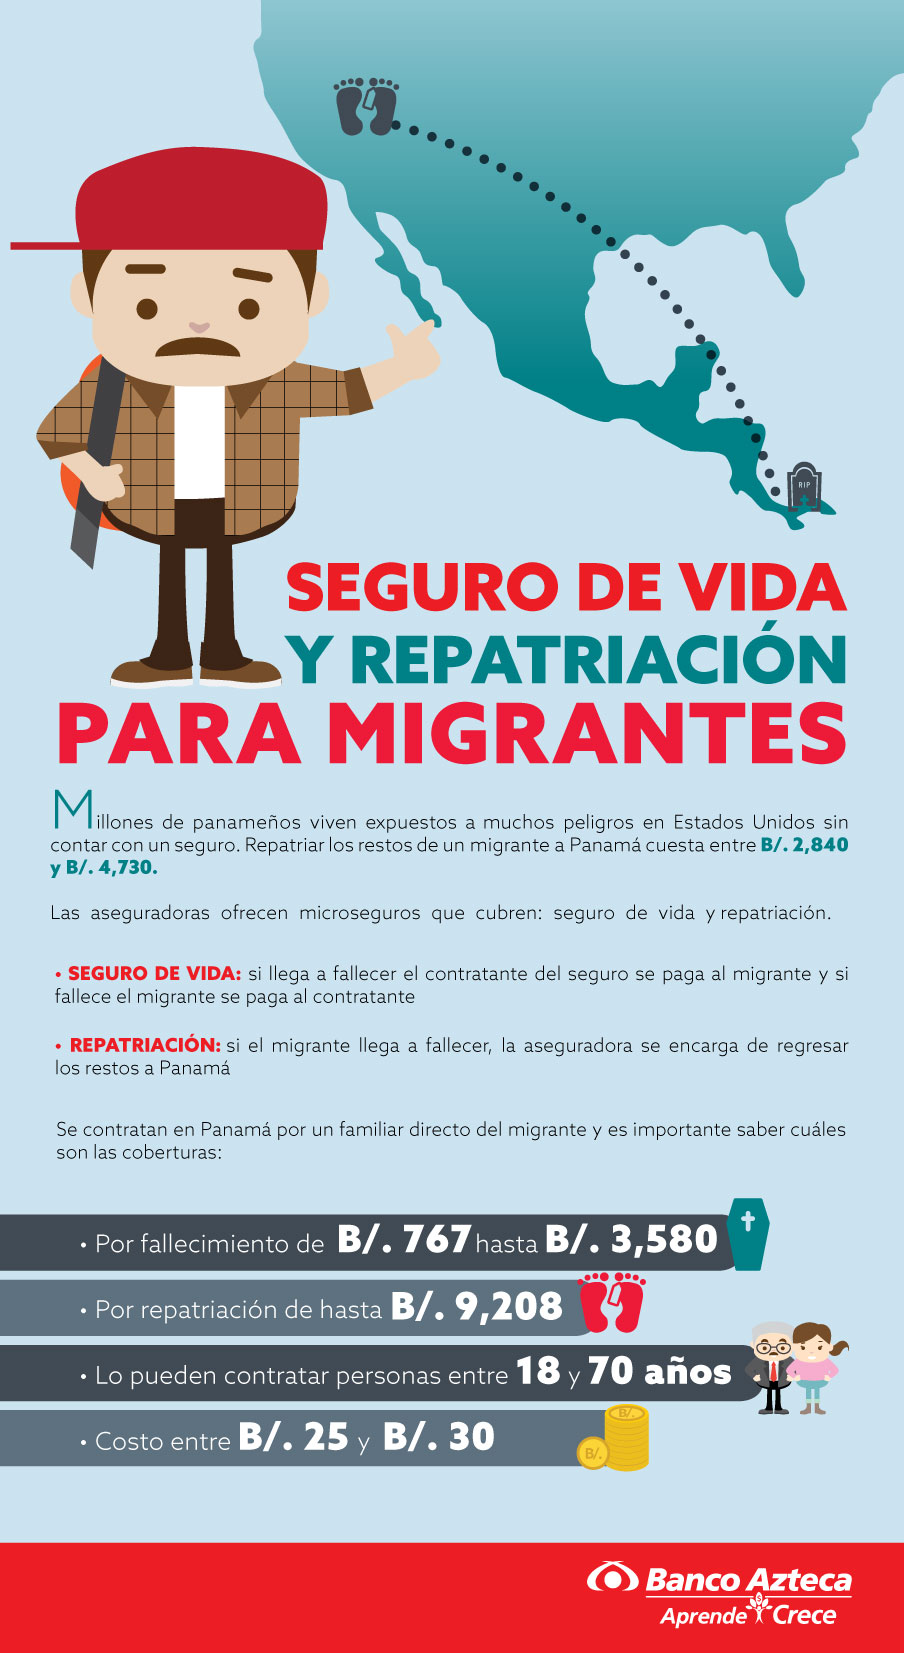 904_seguro_de_vida_migrante.jpg